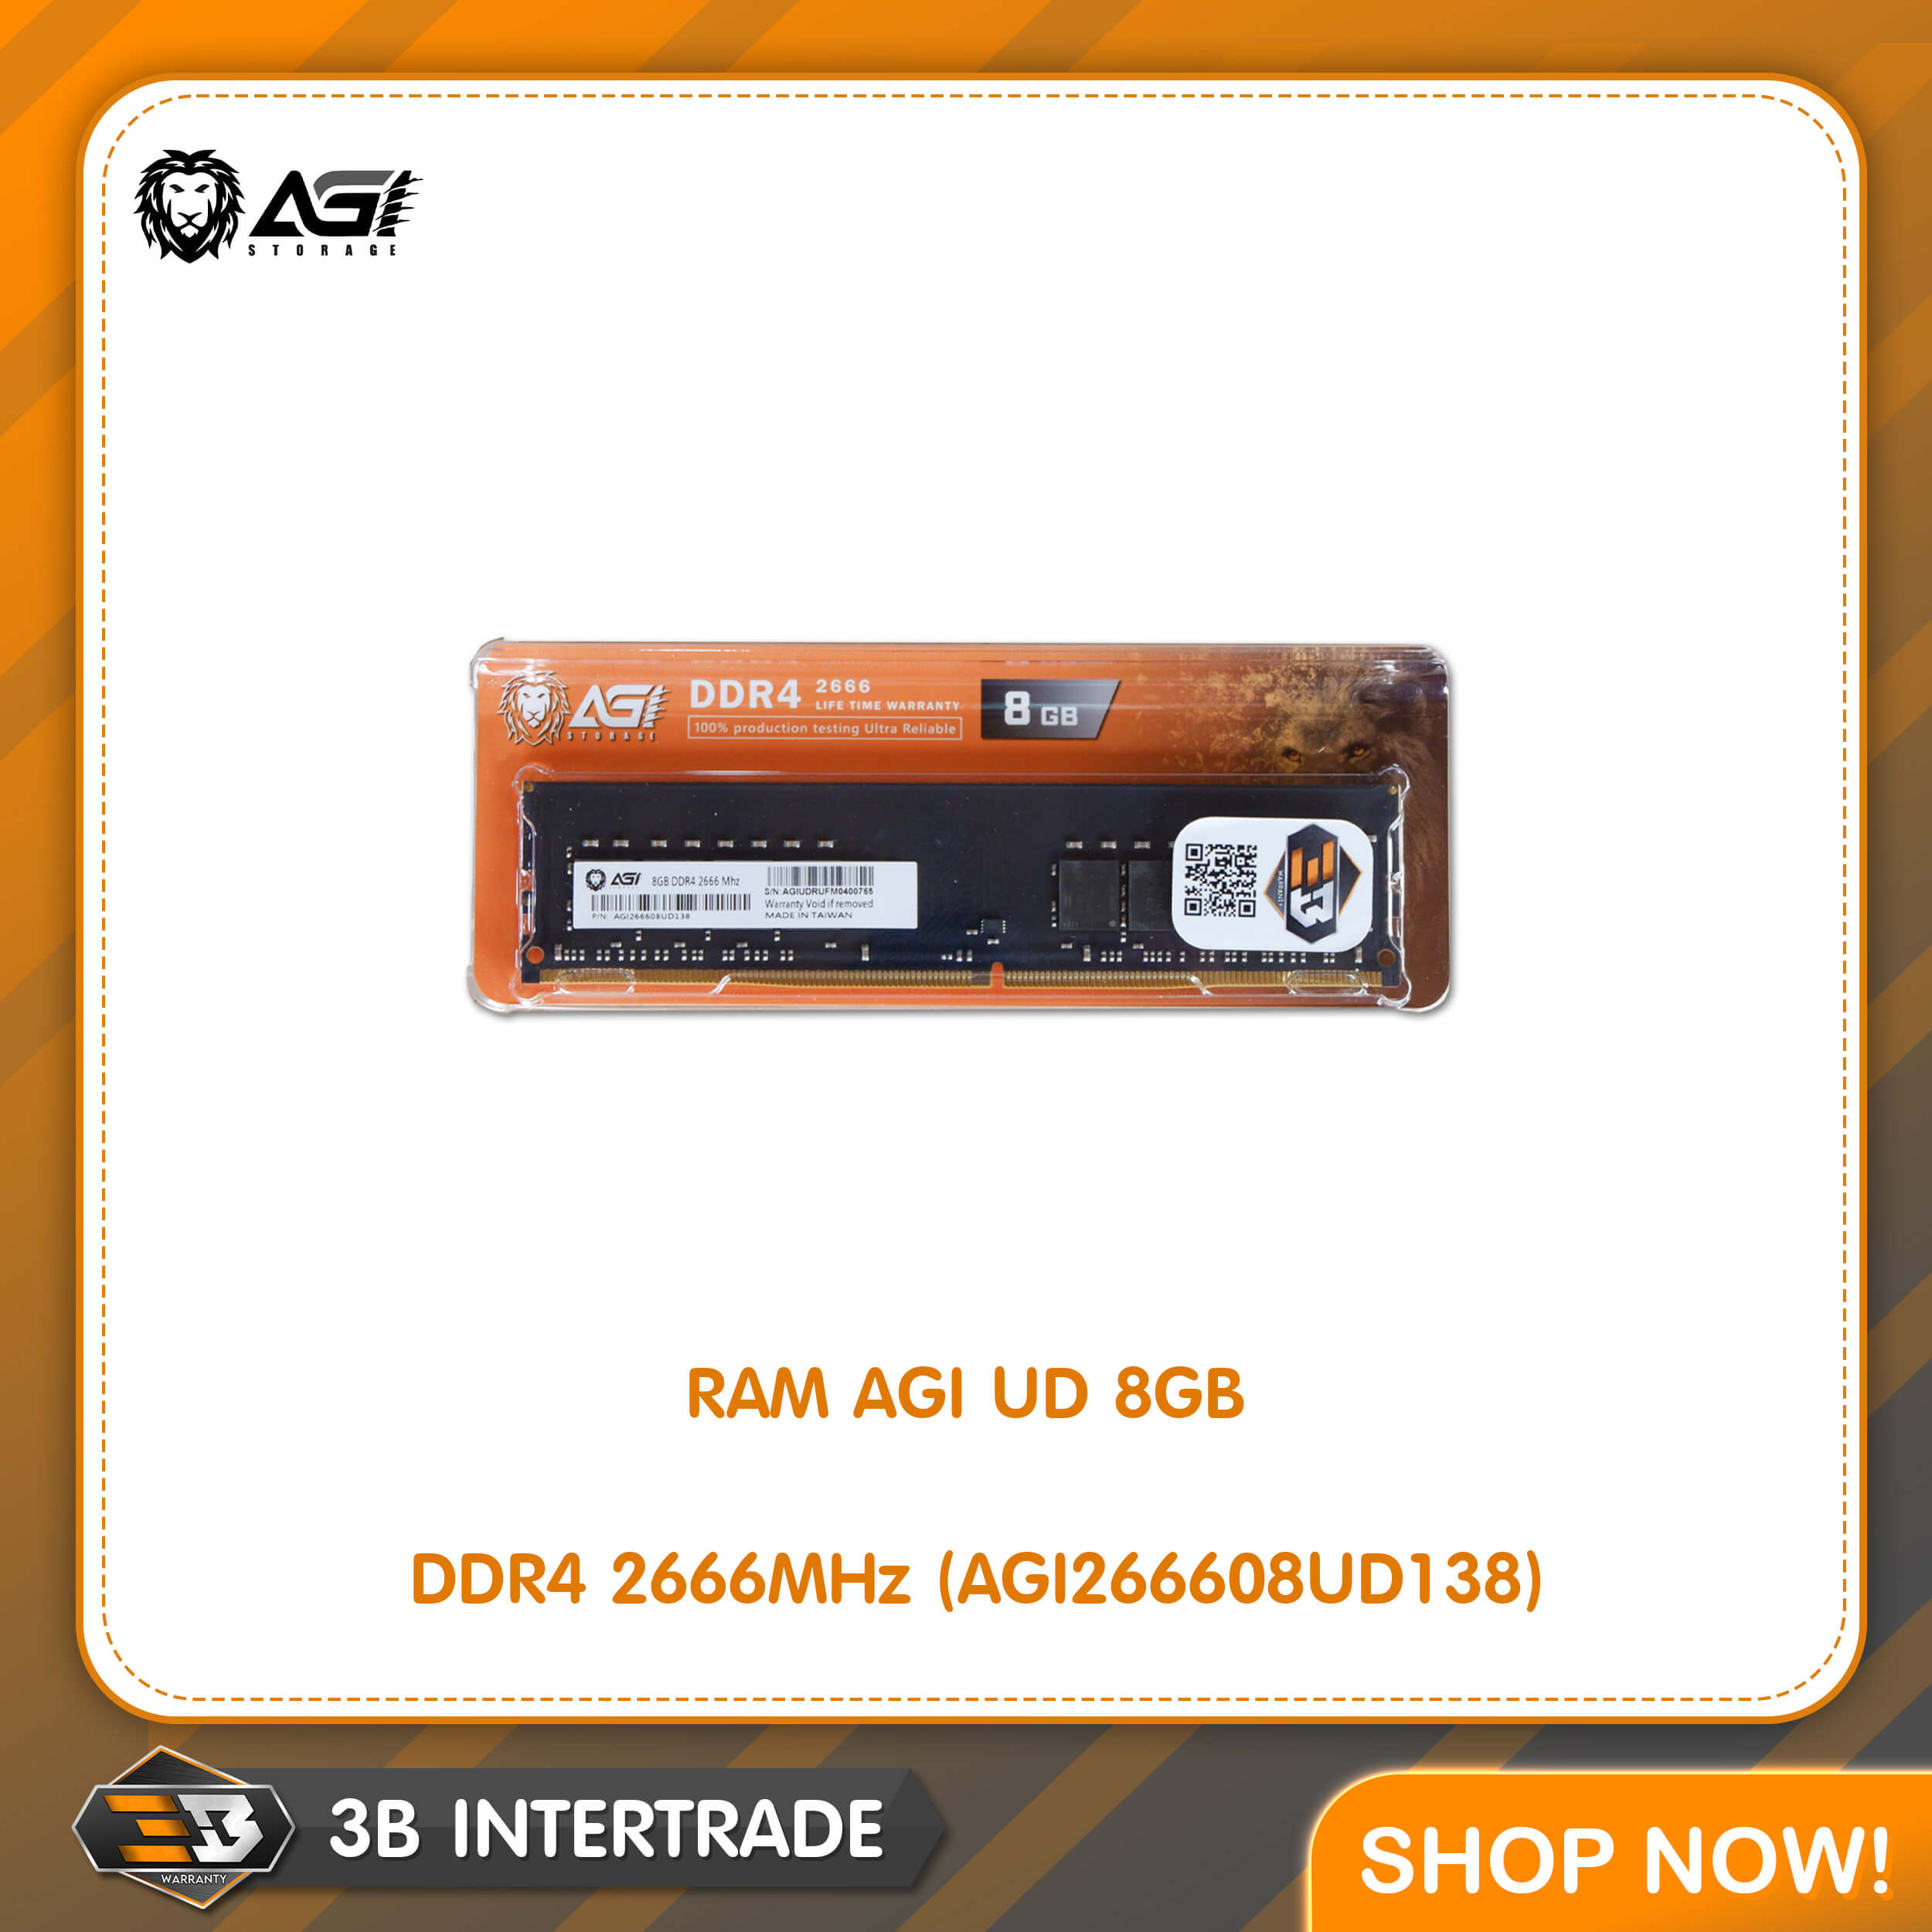 RAM AGI UD 8GB DDR4 2666MHz